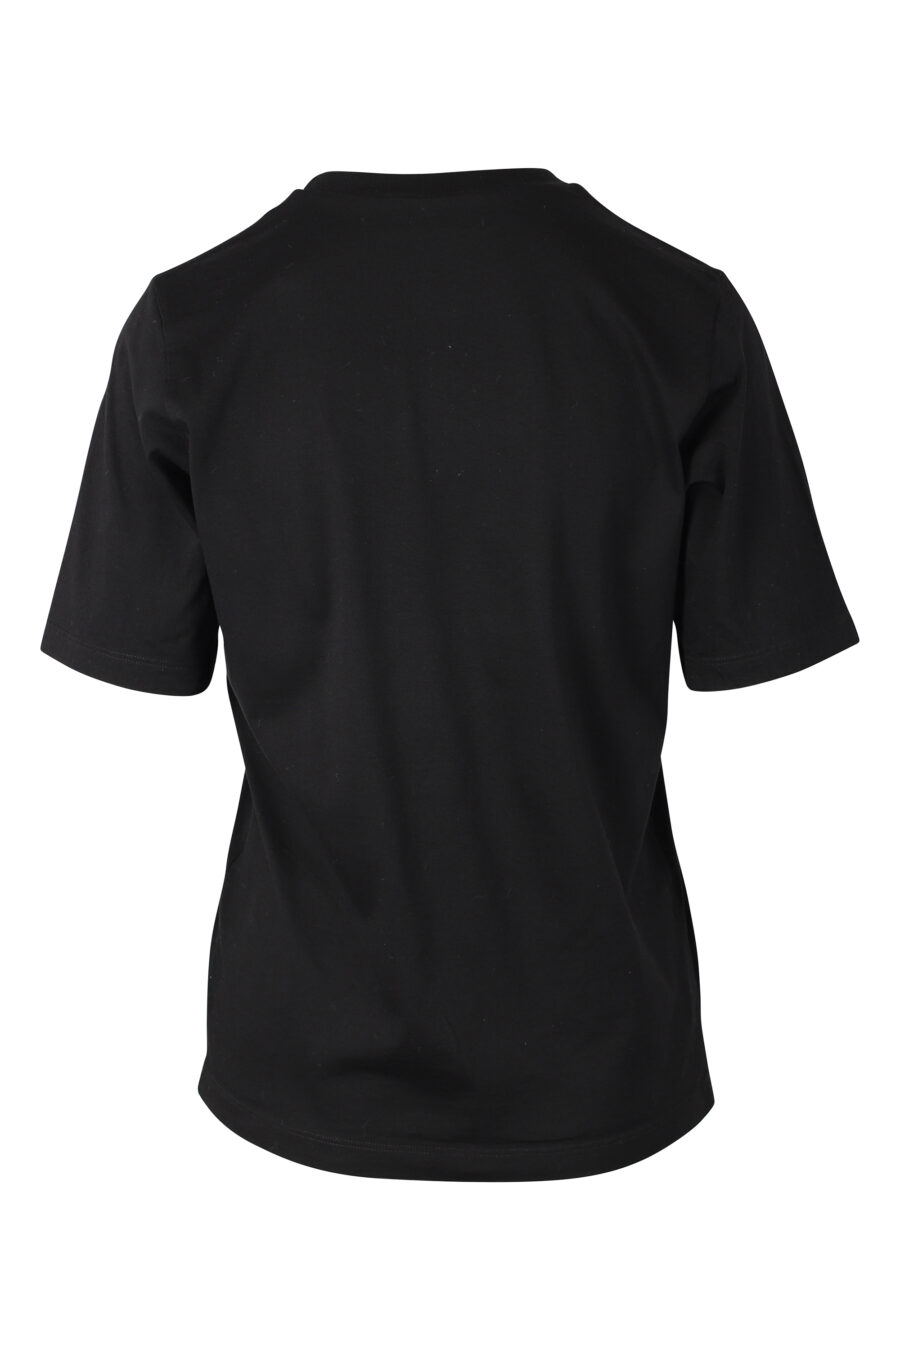 T-Shirt schwarz mit Doppellogo "Ikone Sonnenuntergang" - IMG 9784